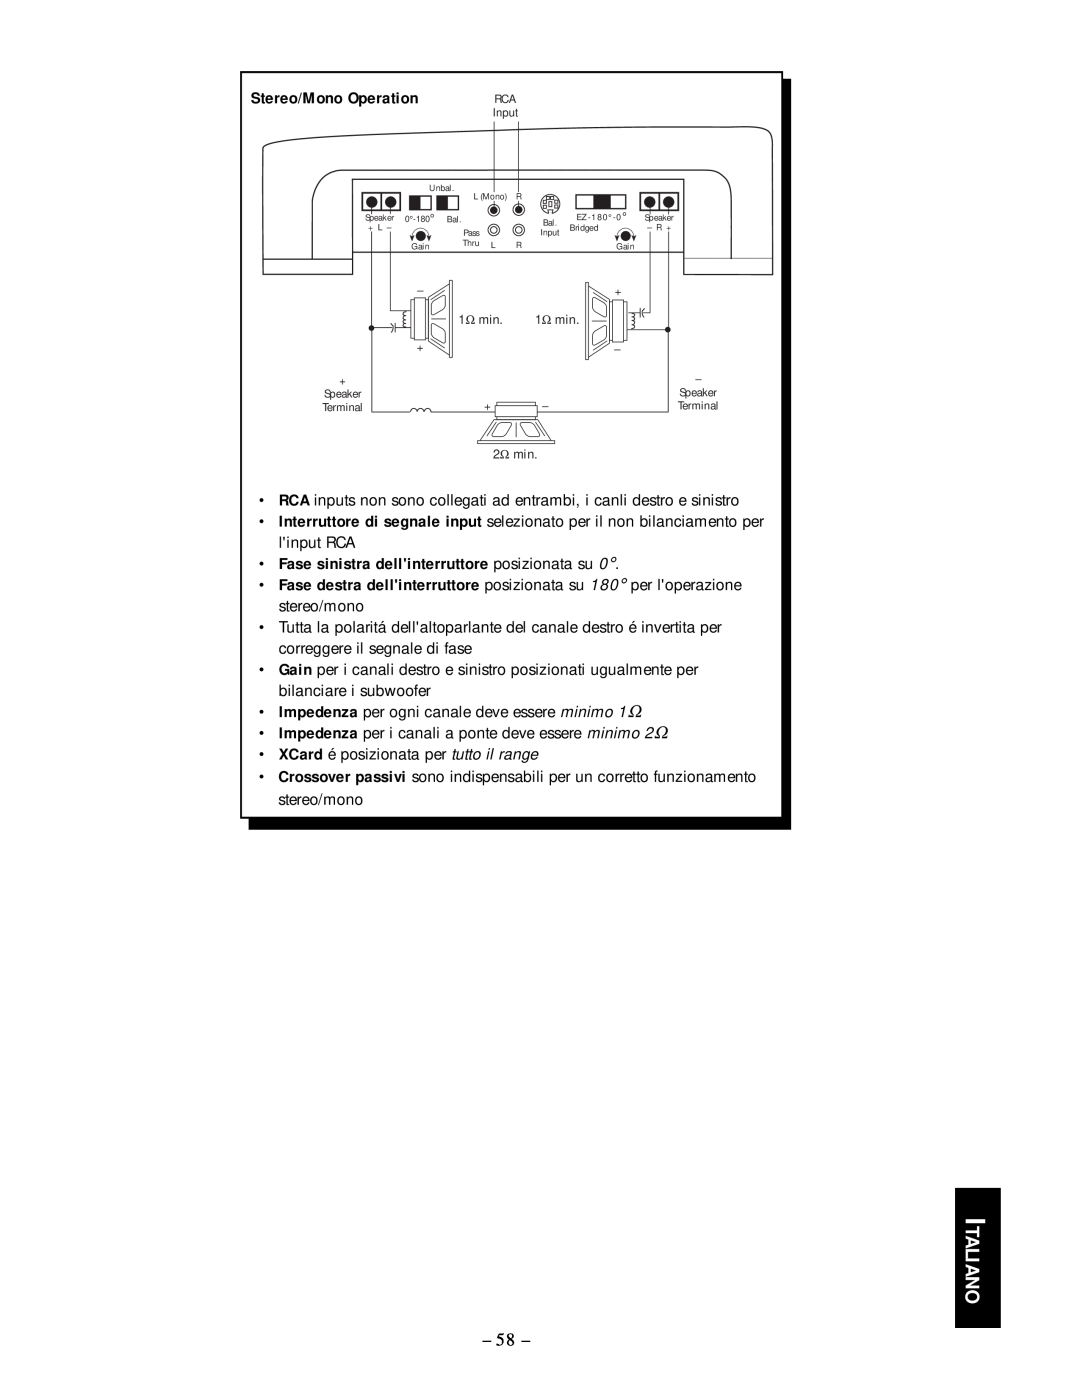 Rockford Fosgate 50.2, 50.1 manual Italiano, Stereo/Mono Operation, Fase sinistra dellinterruttore posizionata su 